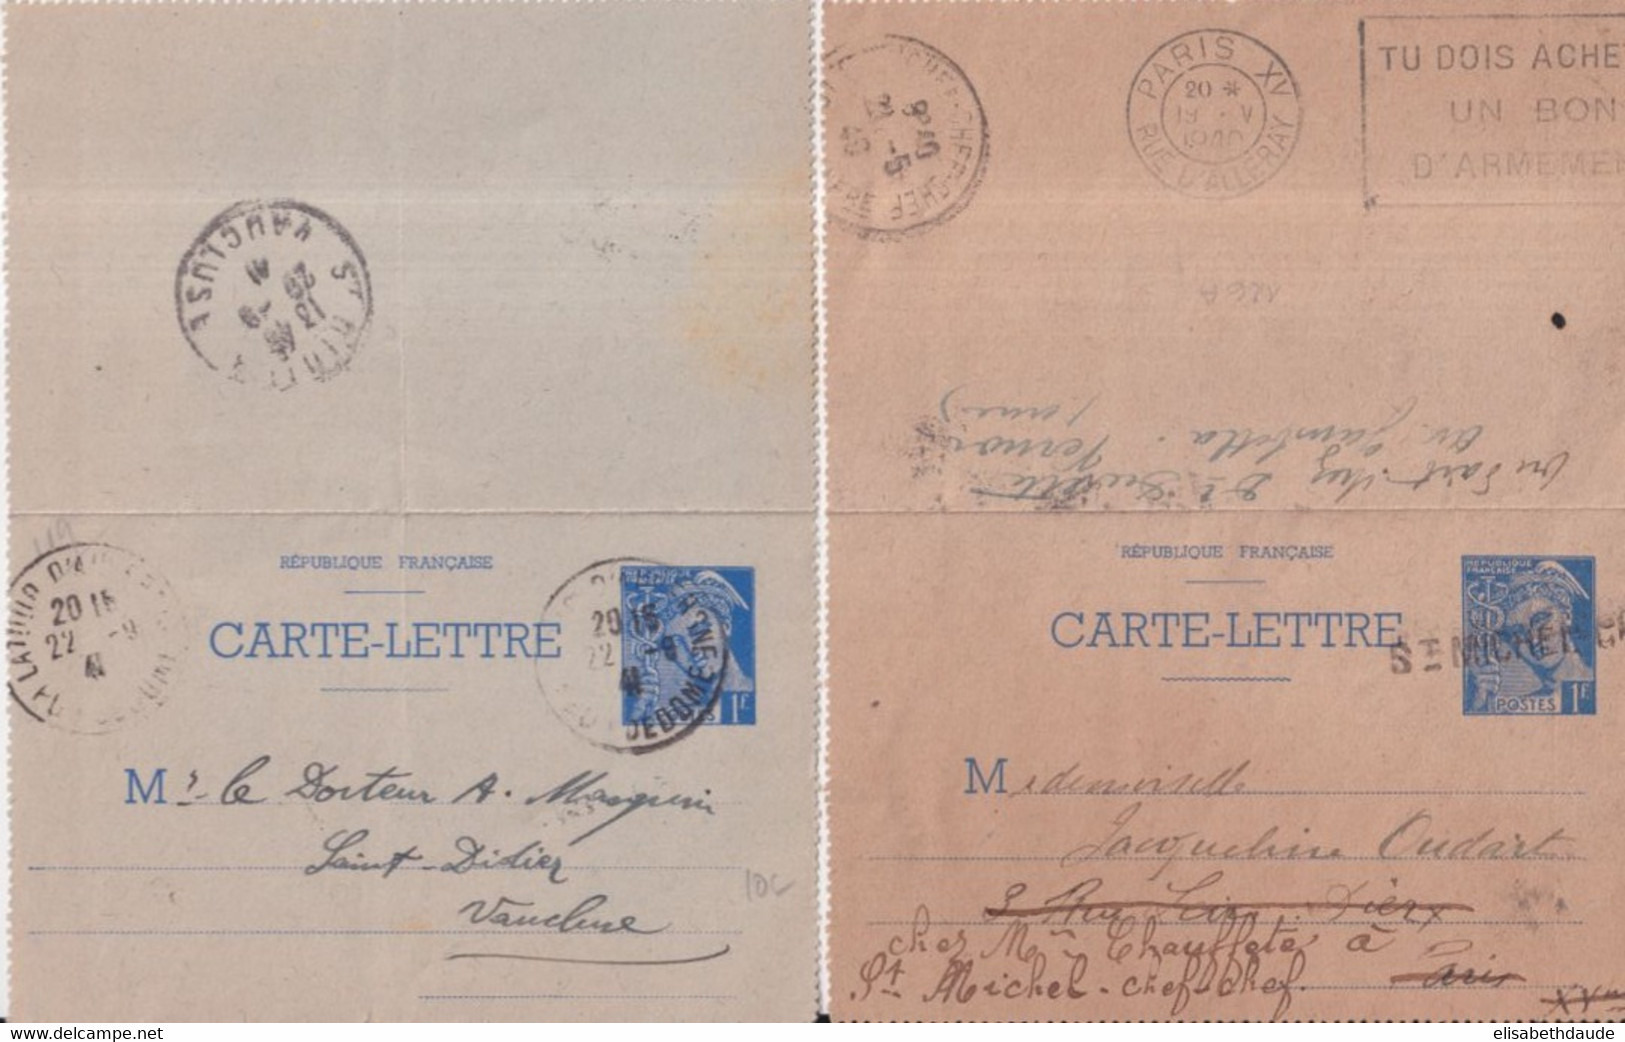 1940/41 - 2 CARTES-LETTRE ENTIER MERCURE - UNE READRESSEE ANNULATION LINEAIRE + MECA PARIS RARE - COULEURS DIFFERENTES ! - Letter Cards